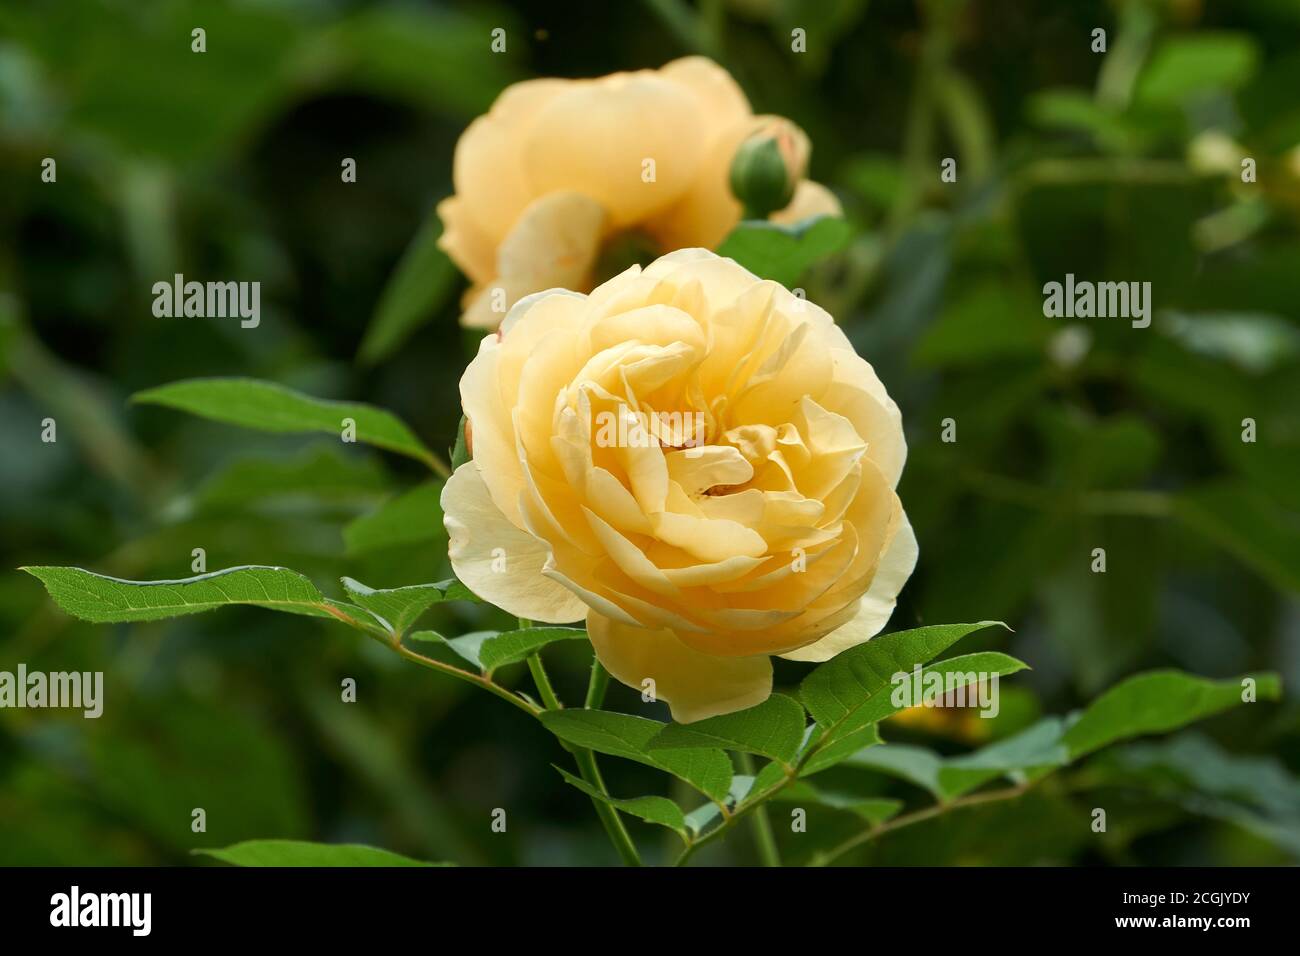 Primer plano de una gran rosa amarilla que florece a finales del verano Foto de stock